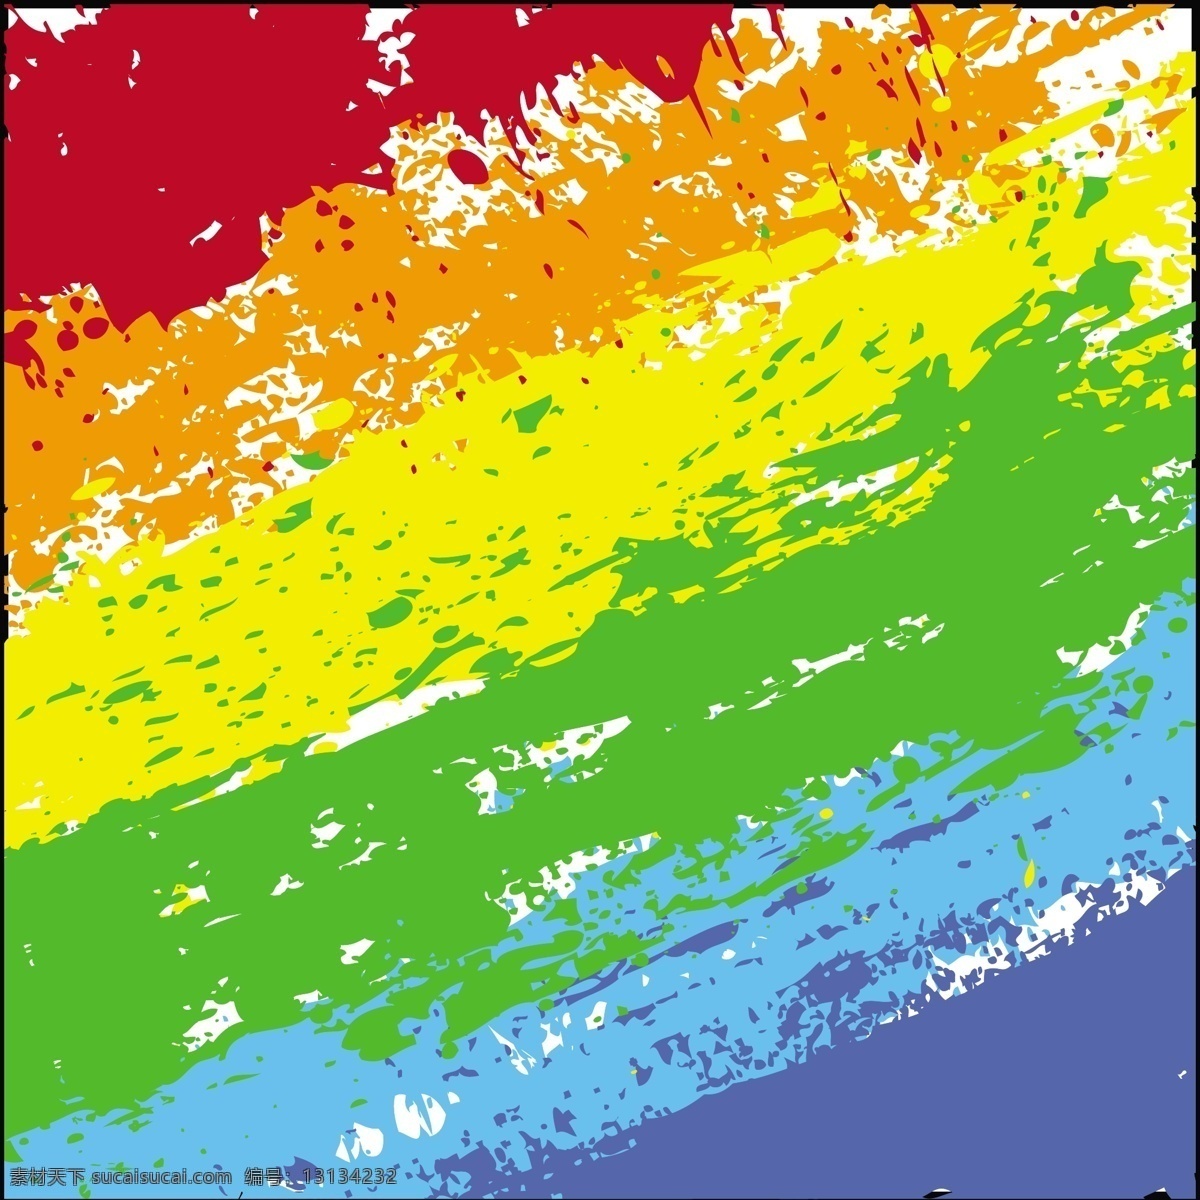 彩虹 抽象 grunge 纹理 矢量图 花纹花边